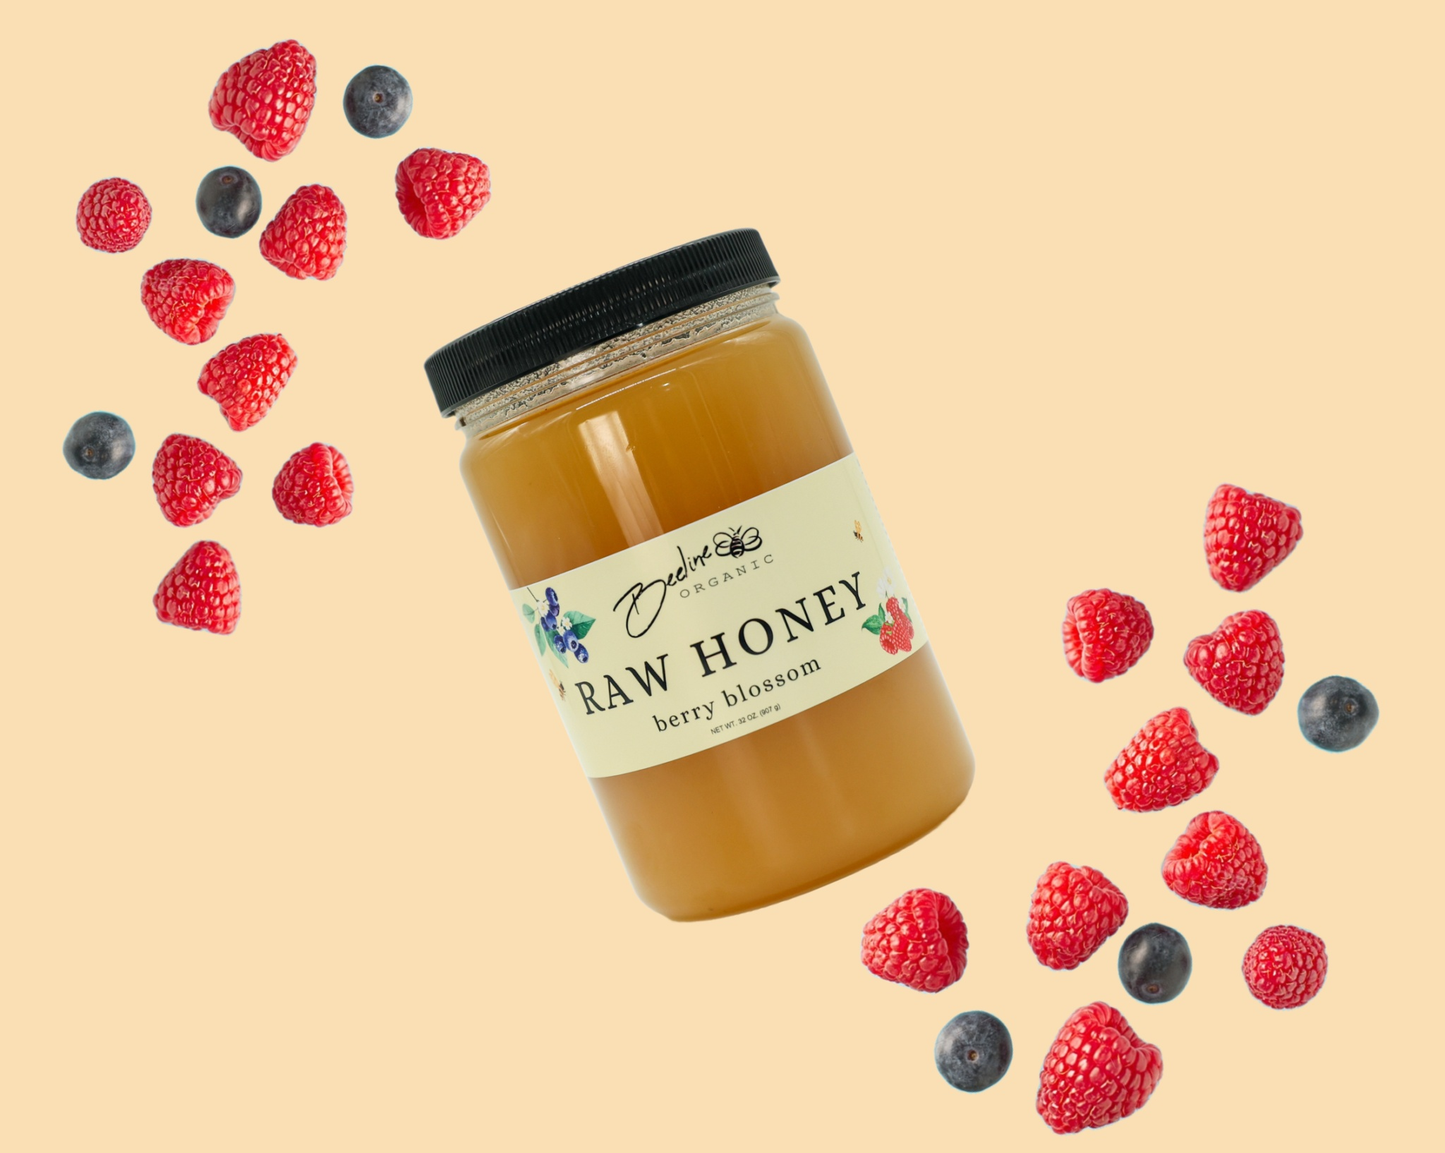 Berry Blossom Raw Honey Jar 32oz.